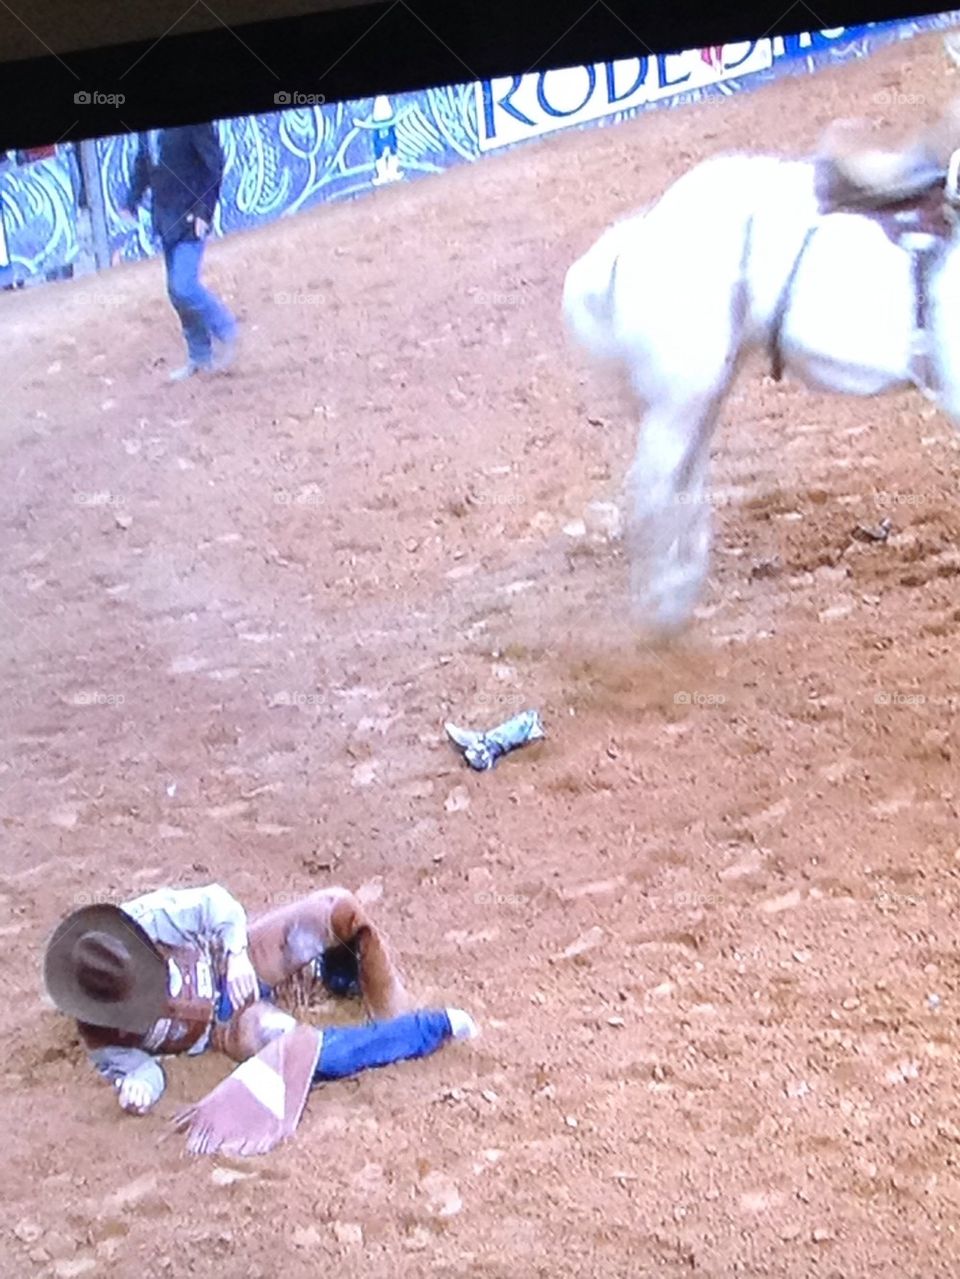 Cowboy down